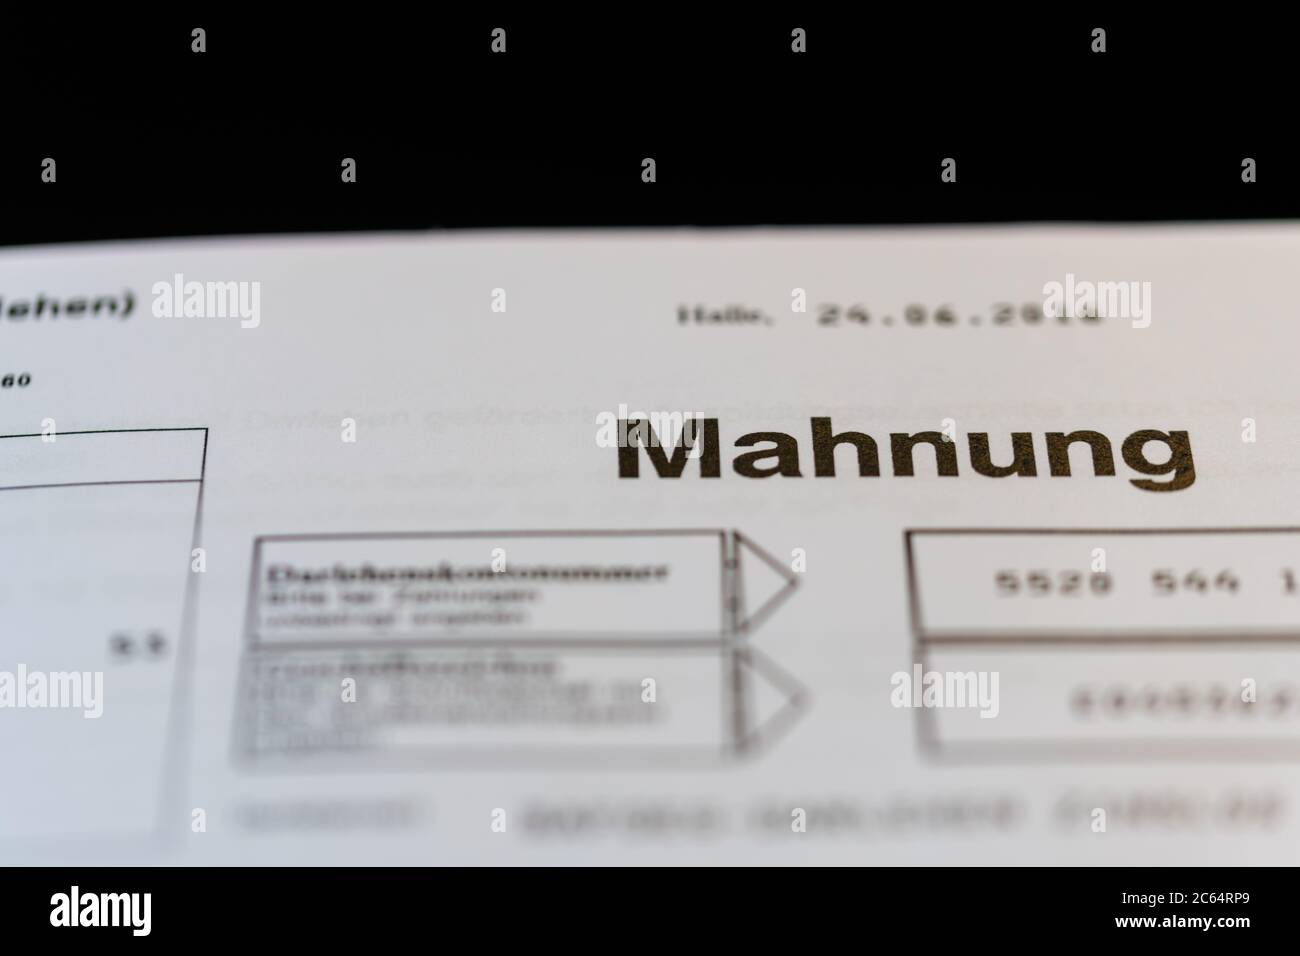 Hude, Deutschland, 07.07.2020:  Fotos einer Bafög Mahnung auf einem Schreibtisch liegend Stock Photo